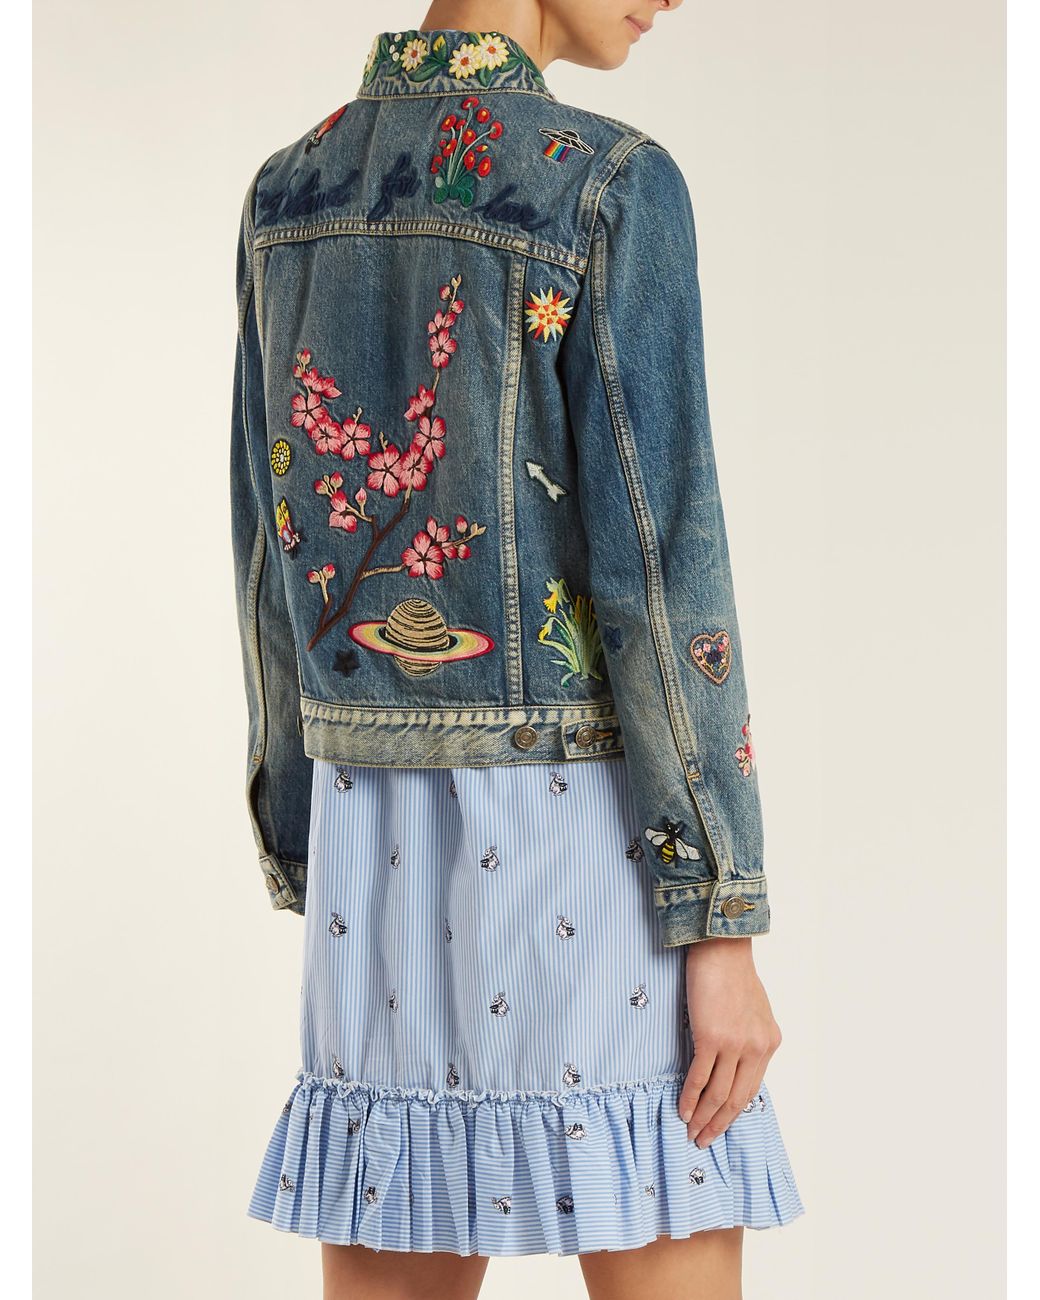 Gucci embroidered denim jacket - Gem